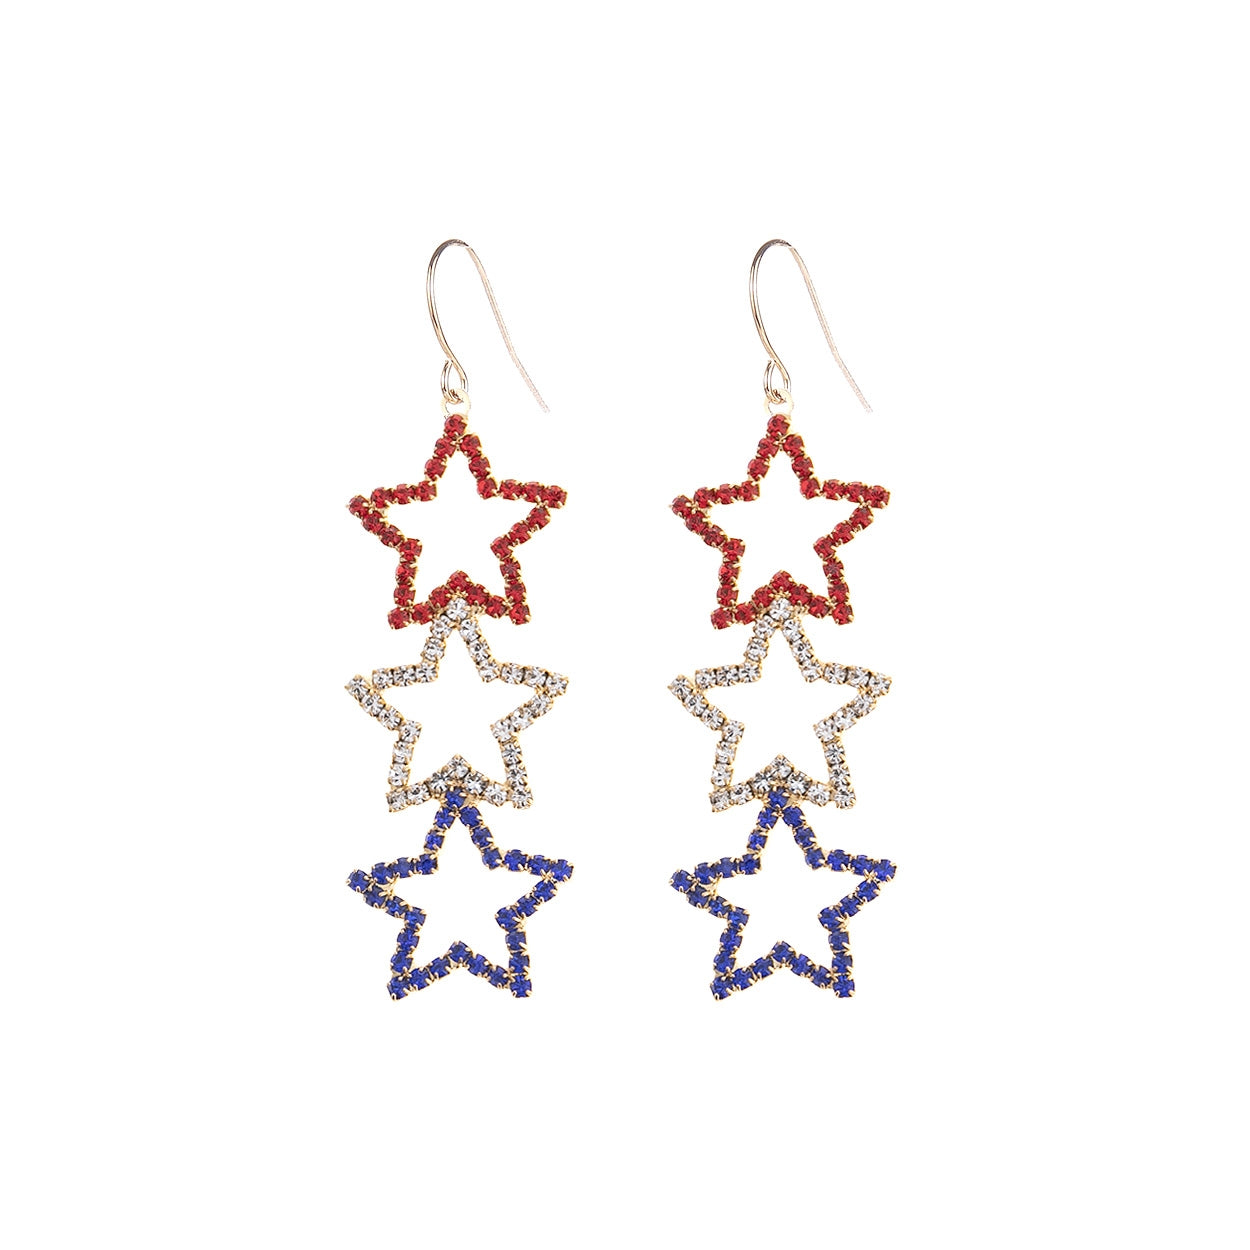 Red White Blue Stars Earrings #12-26905